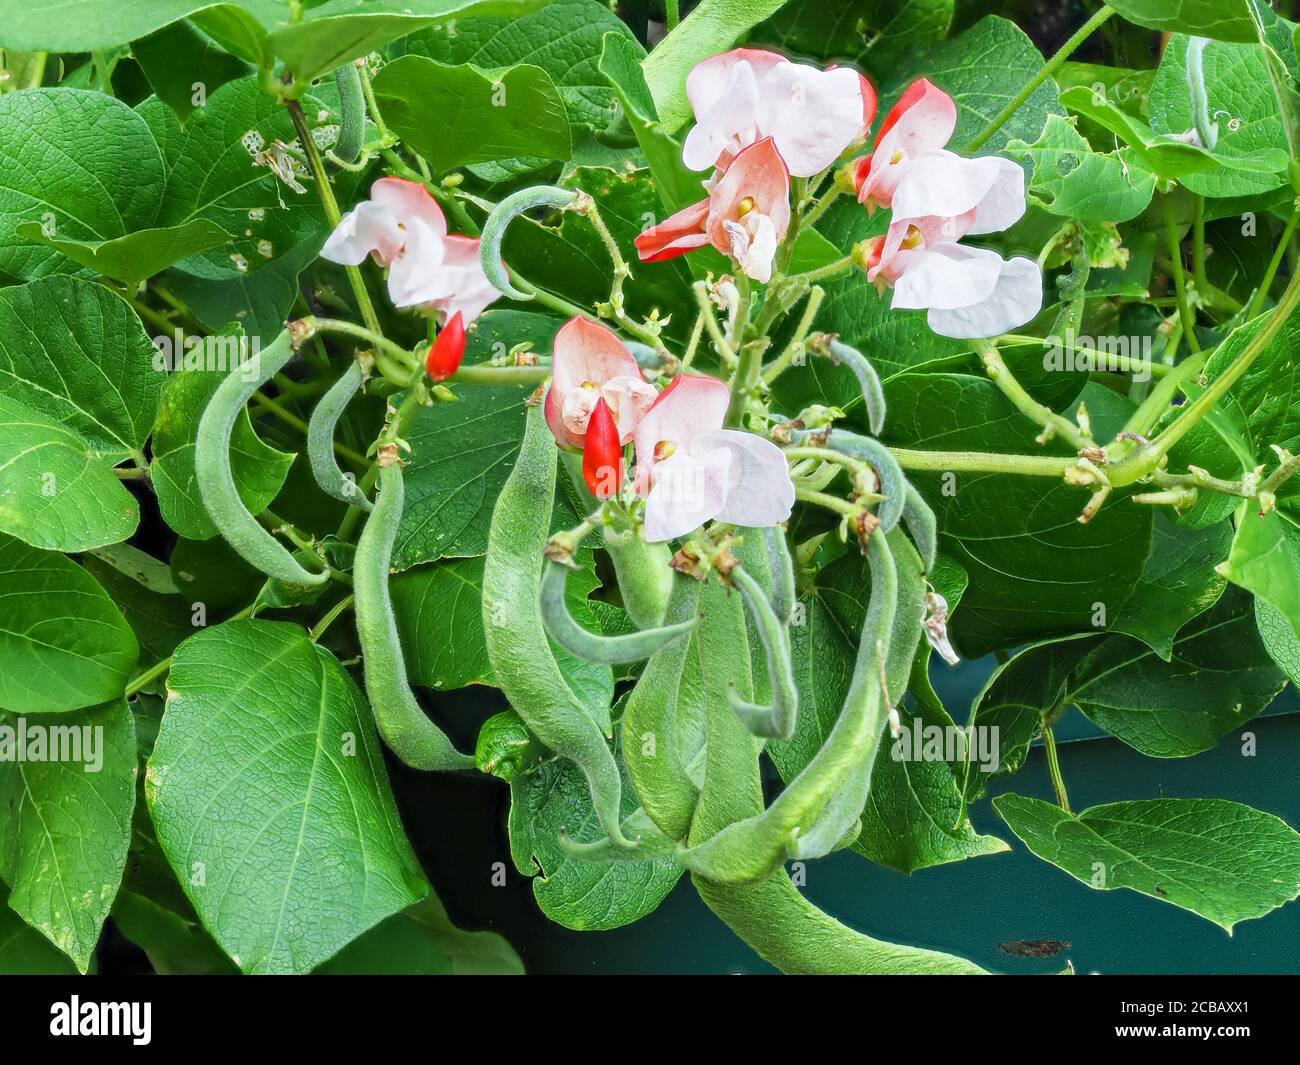 Fiori rossi e bianchi e fagioli in via di sviluppo su una pianta di fagioli nani, varietà Hestia Foto Stock